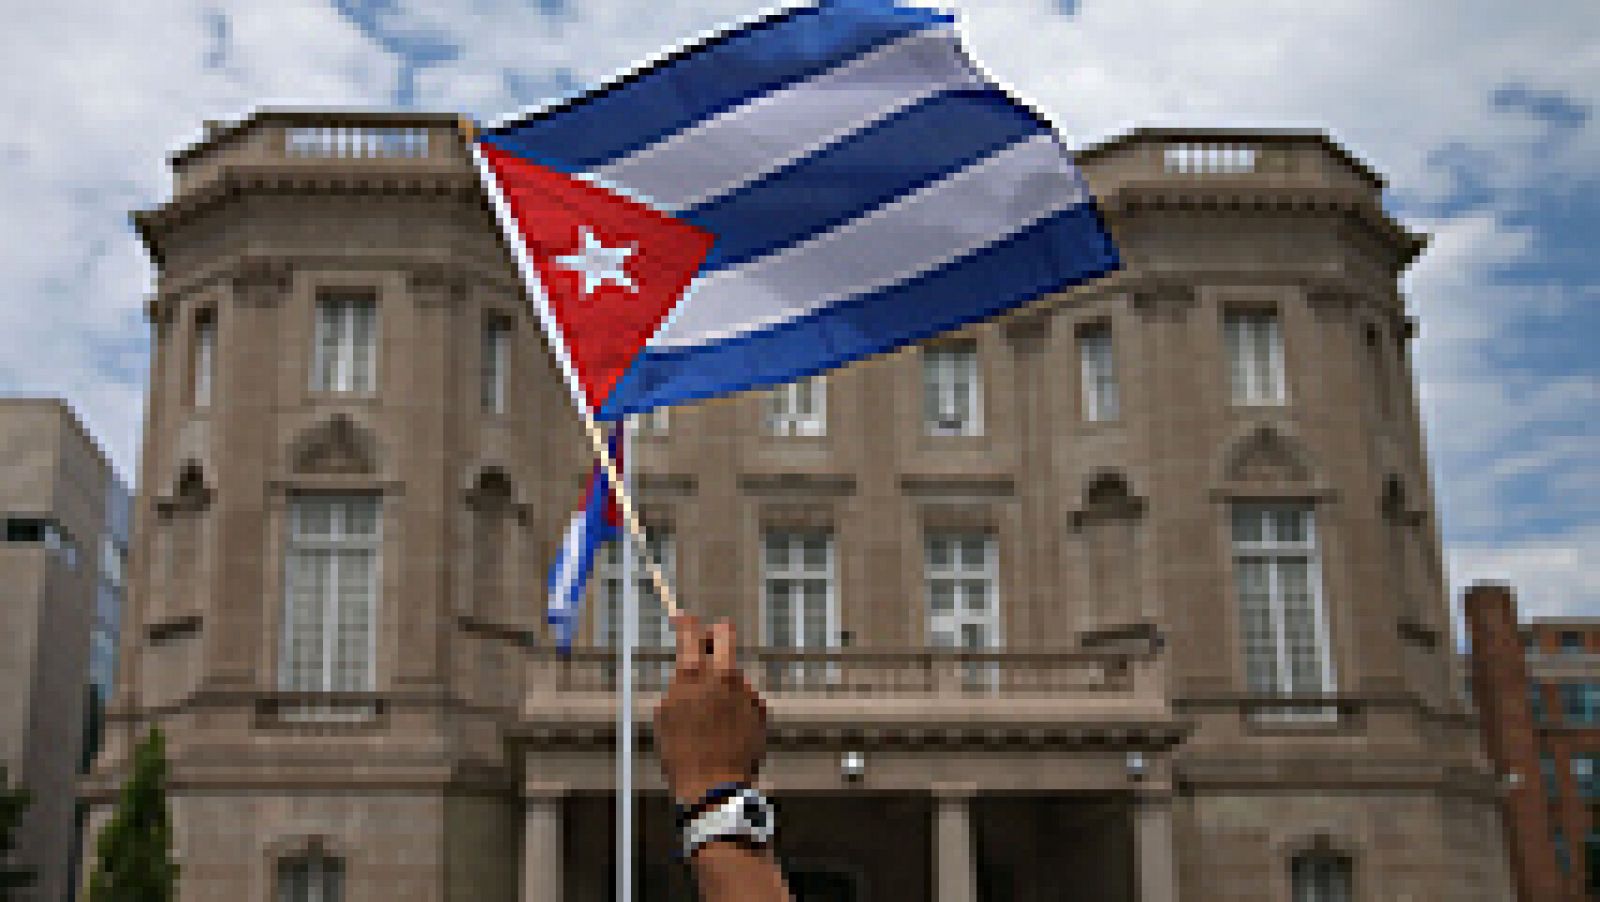 La bandera de Cuba ondea ya en su Embajada en Washington tras el restablecimiento oficial de las relaciones diplomáticas con Estados Unidos tras casi 55 años de ruptura. La ceremonia del izado de la bandera cubana, llevada a cabo en el edificio que desde 1977 acogía la Sección de Intereses de Cuba en Estados Unidos, ha estado encabezada por el canciller cubano, Bruno Rodríguez. Por su parte, la ya Embajada de Estados Unidos en Cuba ha confirmado también su reapertura, aunque el acto oficial de izado de bandera no se producirá hasta más adelante. Para ese acto acudirá a La Habana el secretario de Estado de EEUU, John Kerry, y la fecha será el próximo 14 de agosto.